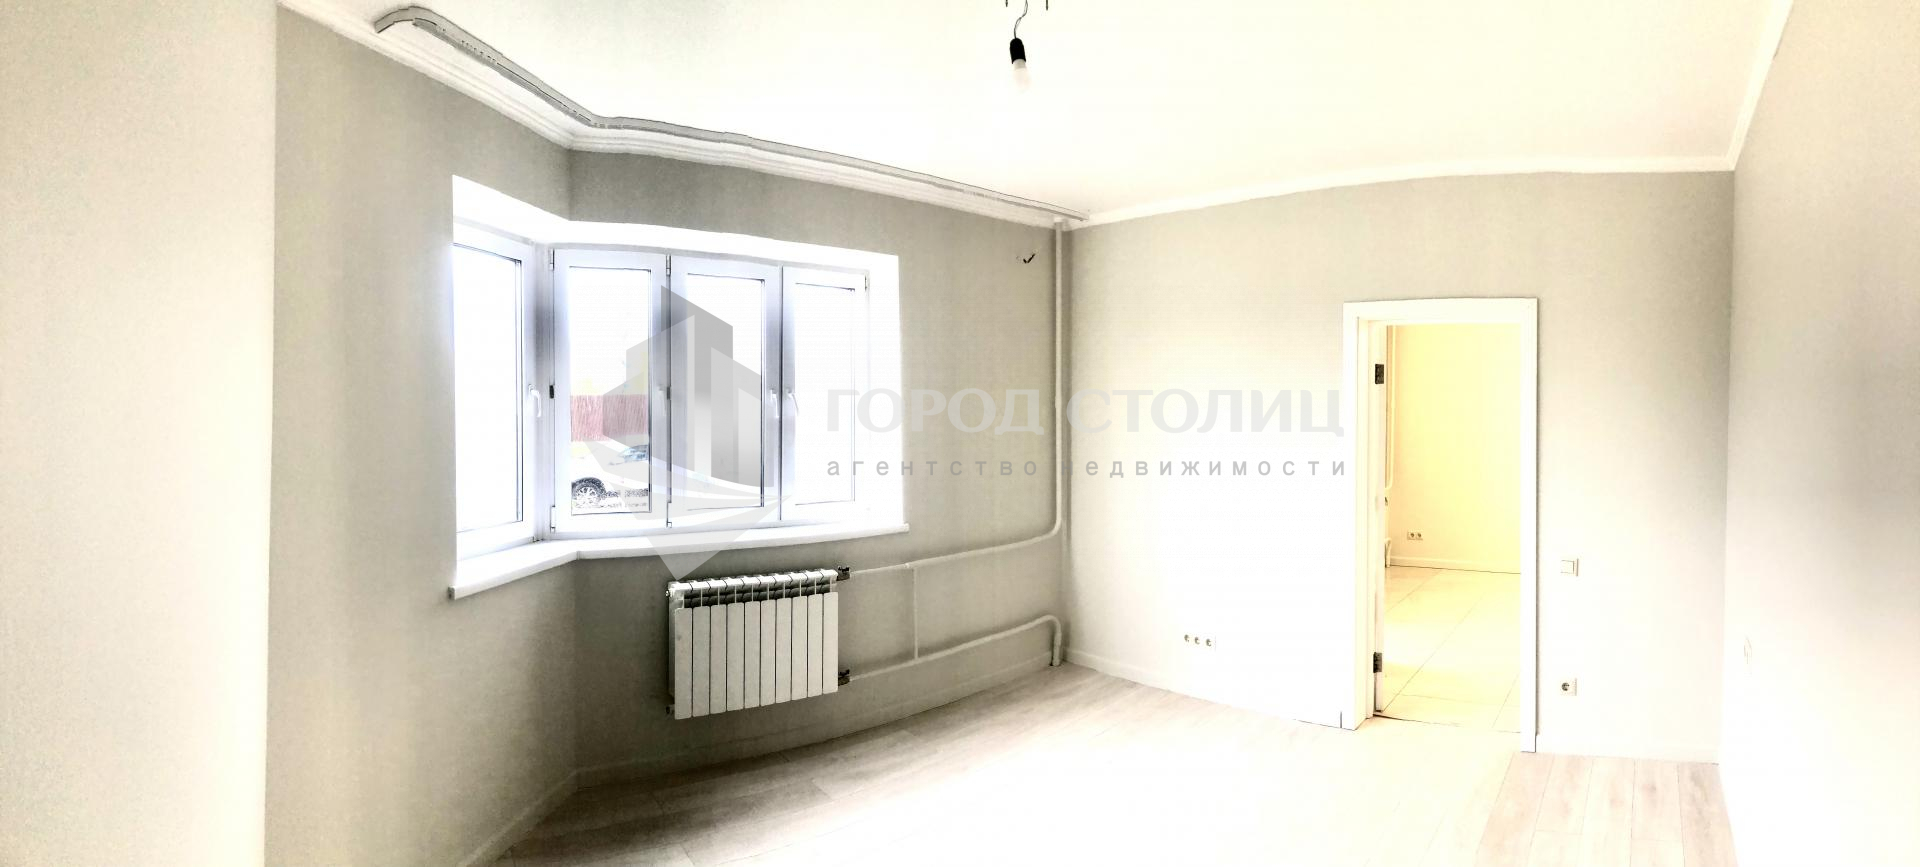 Продам квартиру в Коммунарка по адресу улица Сосенский Стан, 11, площадь 80 квм Недвижимость Москва (Россия)   В квартире спальни изолированные, большая кухня-гостиная, просторный холл